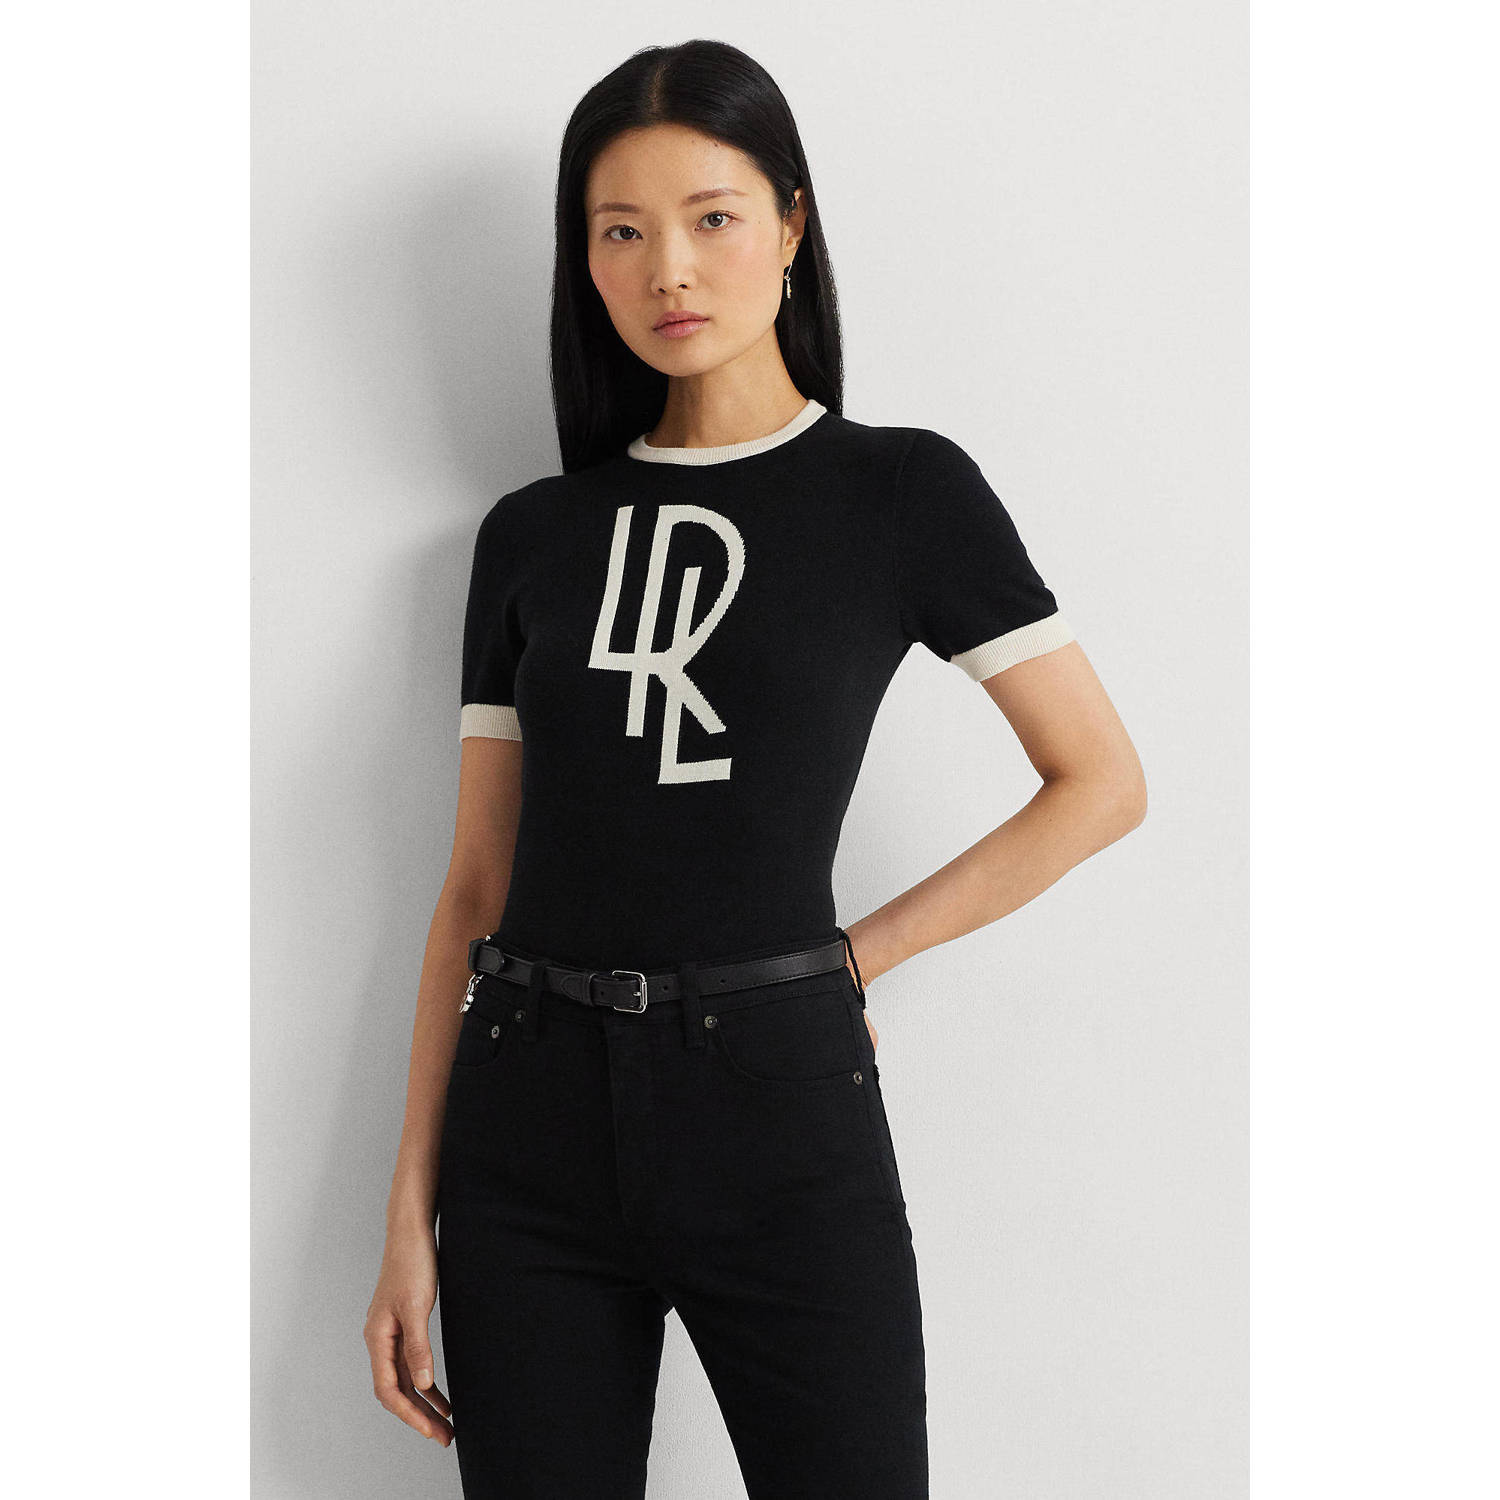 Lauren Ralph Lauren fijngebreide top met contrastbies zwart wit